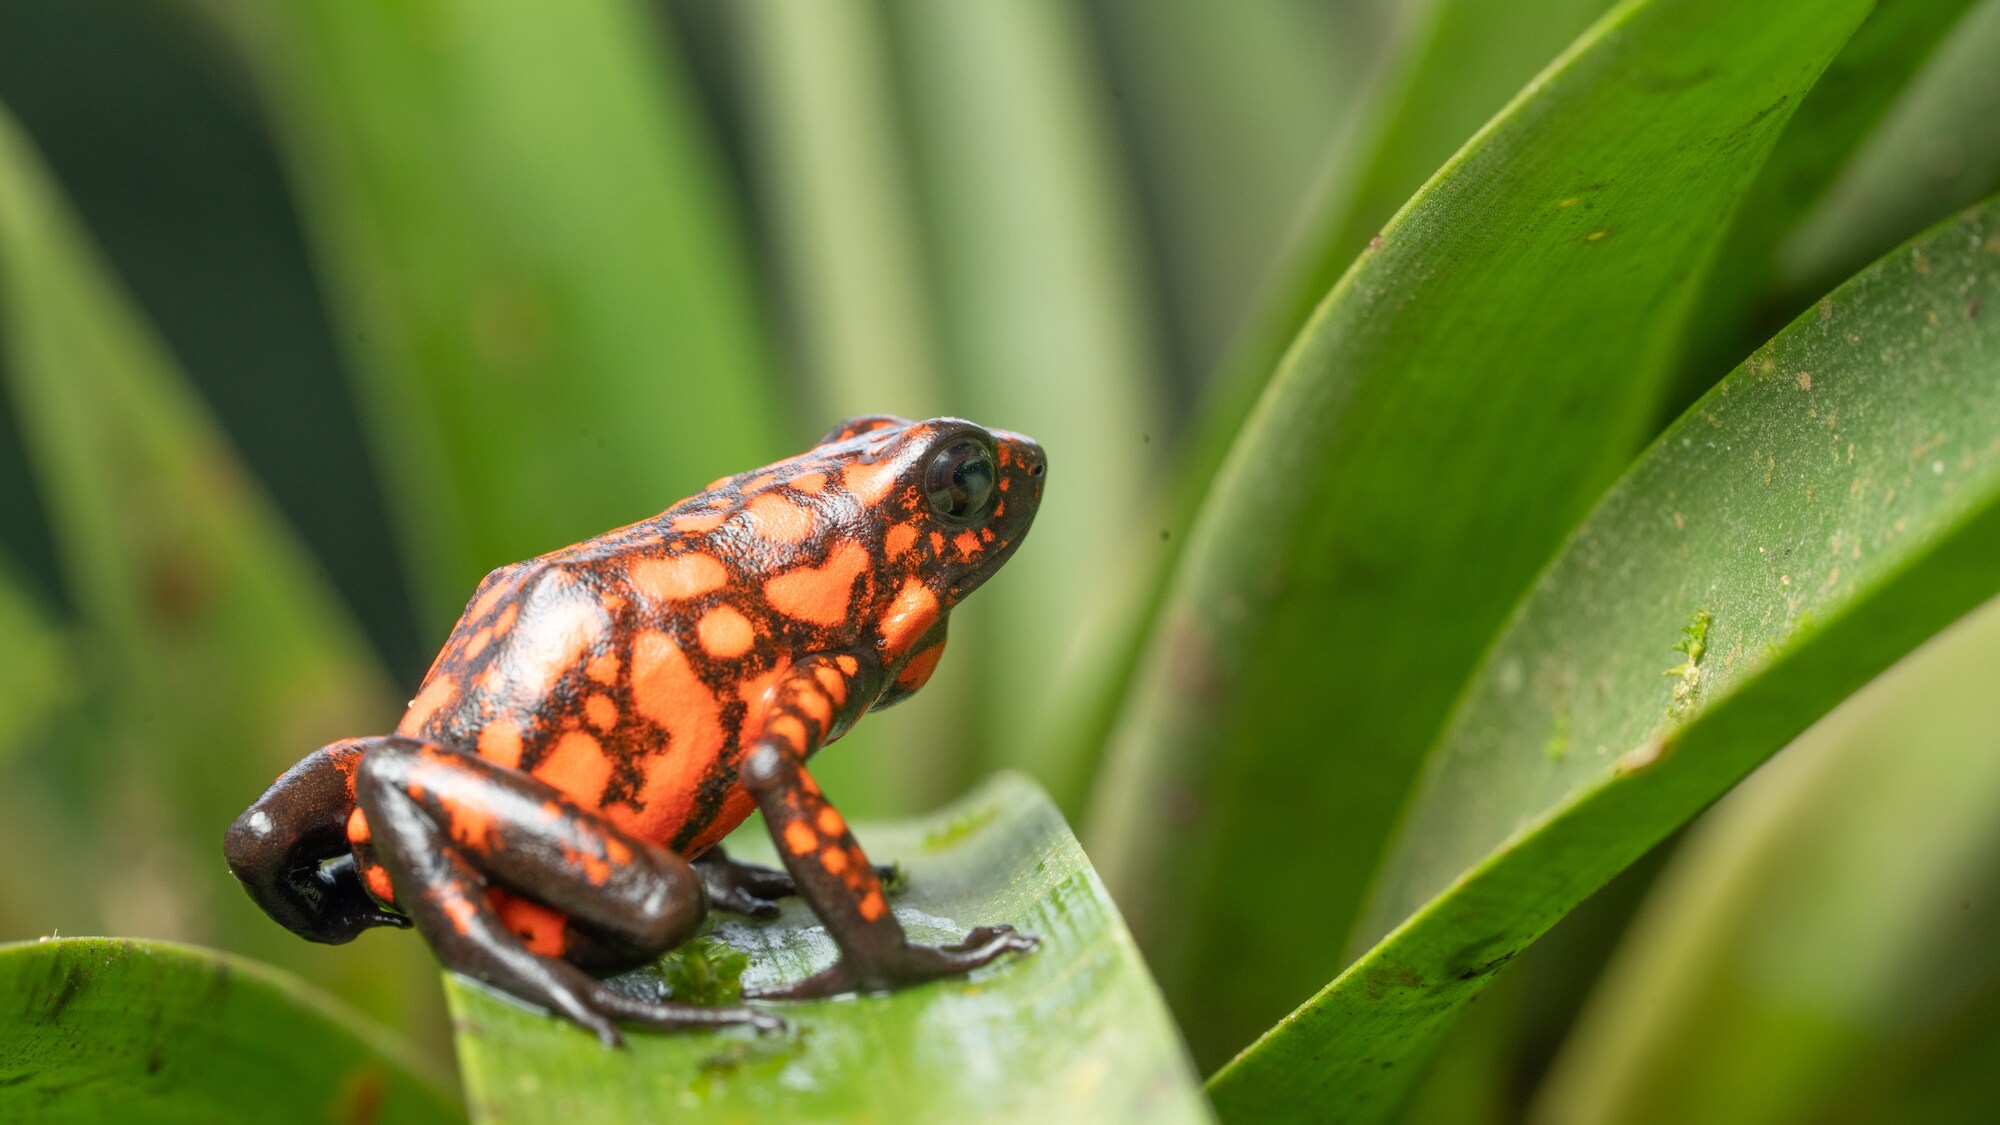 Little devil poison dart frog on a leaf. (National Geographic for Disney+/)